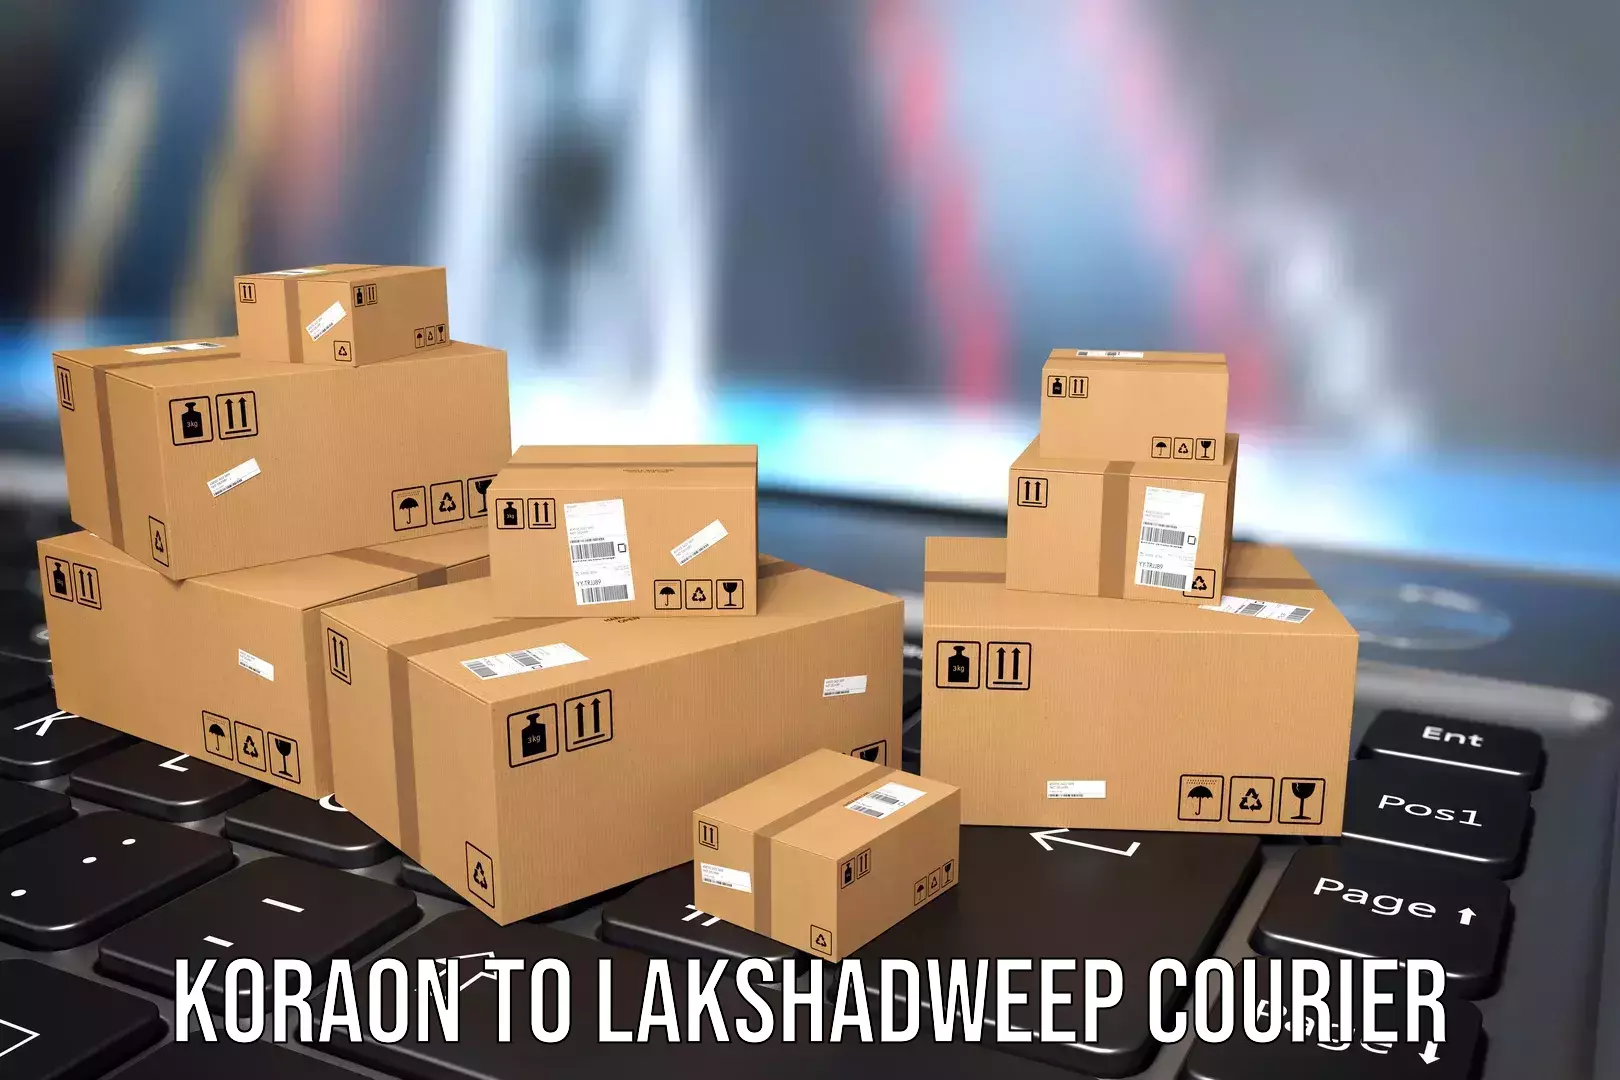 Luggage transport company Koraon to Lakshadweep